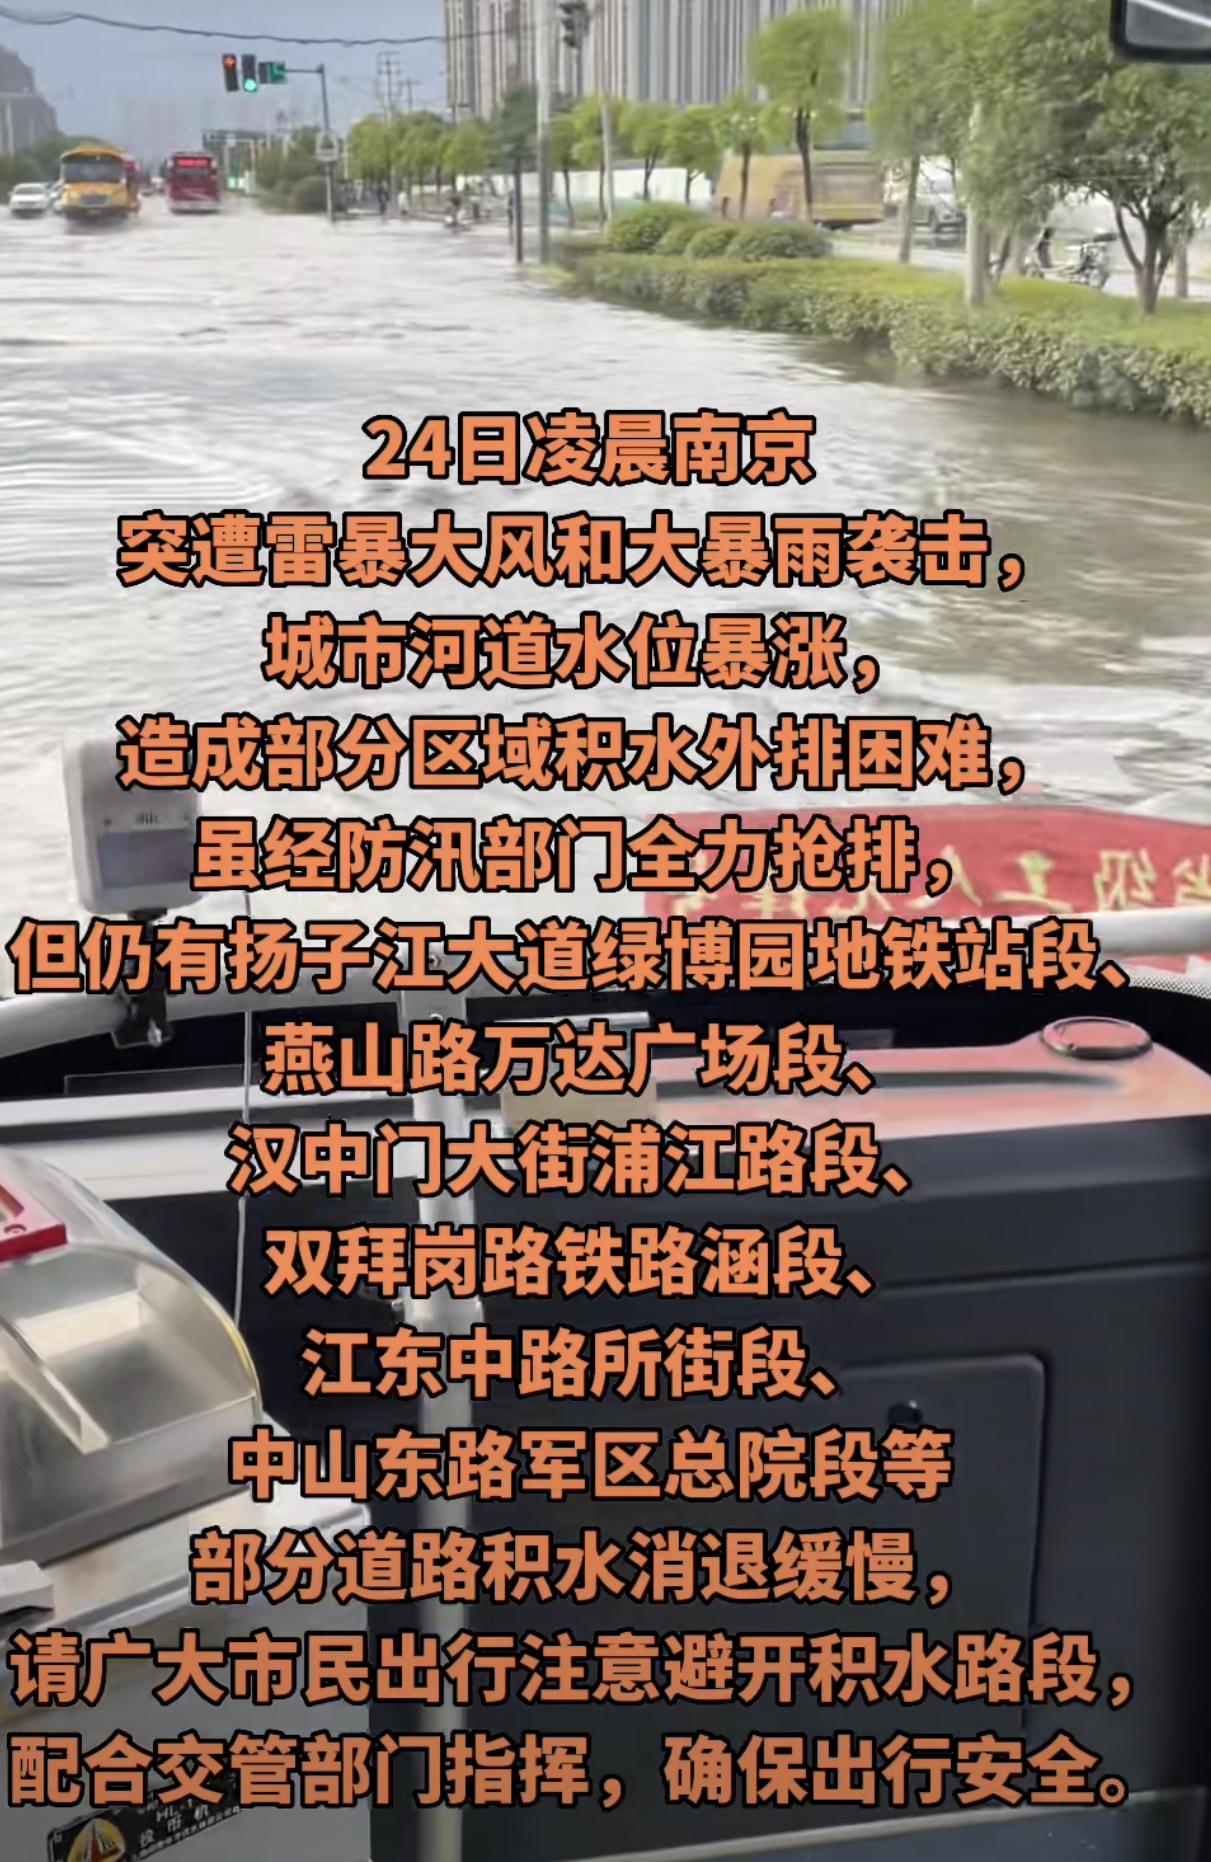 名嘴孟非小区被暴雨淹没，定居南京老城区17年，曾痛骂市长不作为